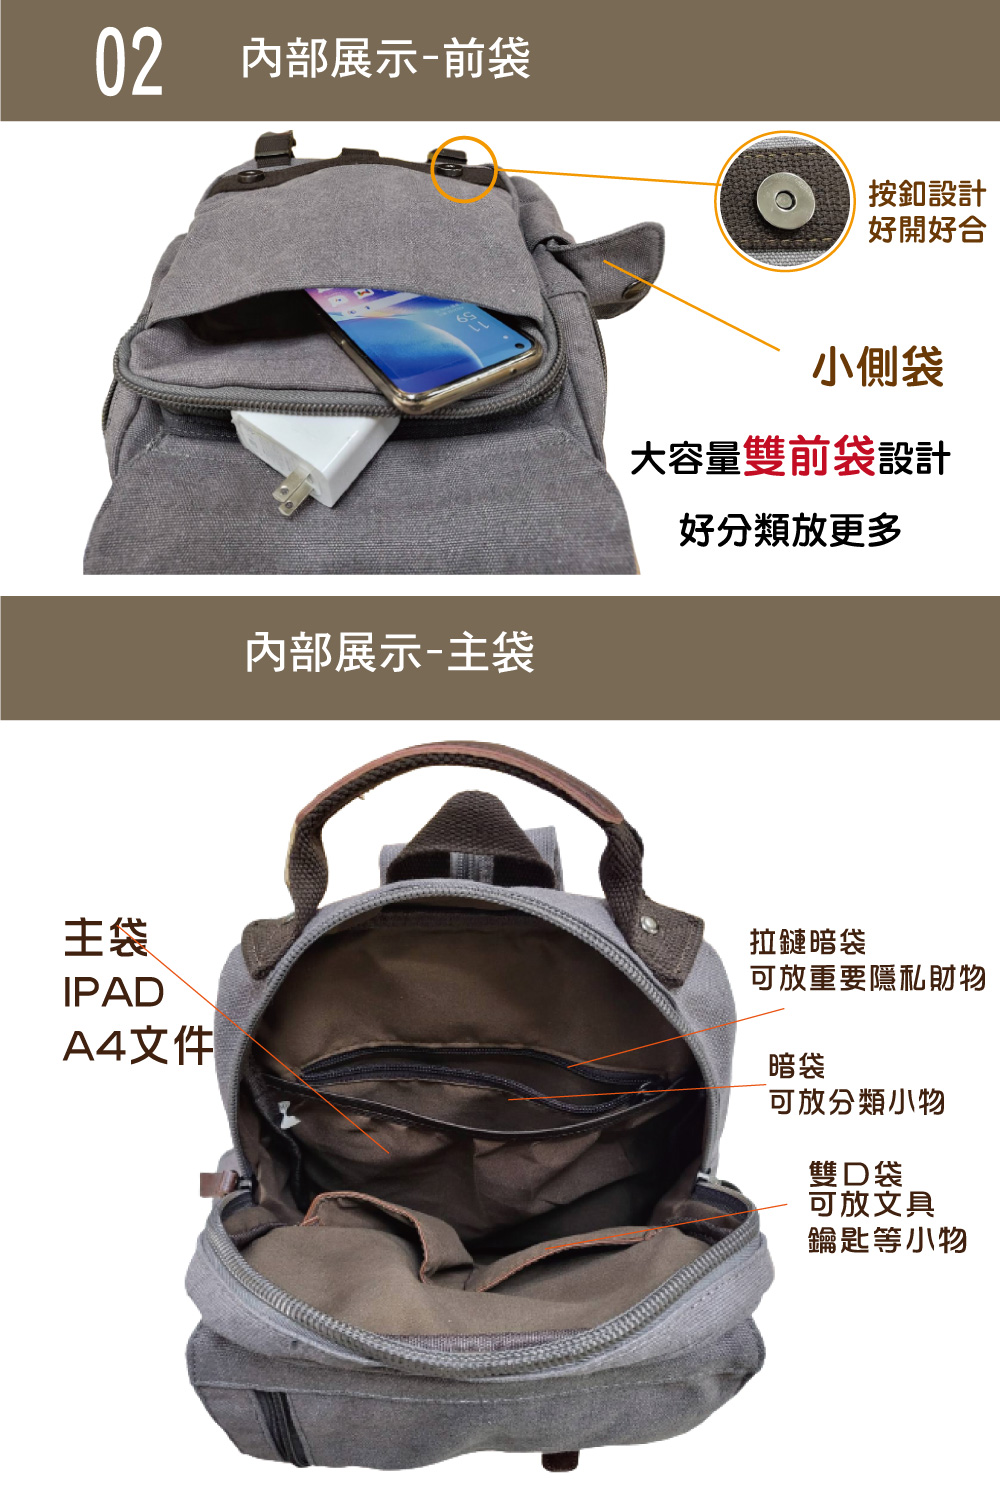 韓版大容量多層收納耐磨帆布後背包 多色可選 旅行包